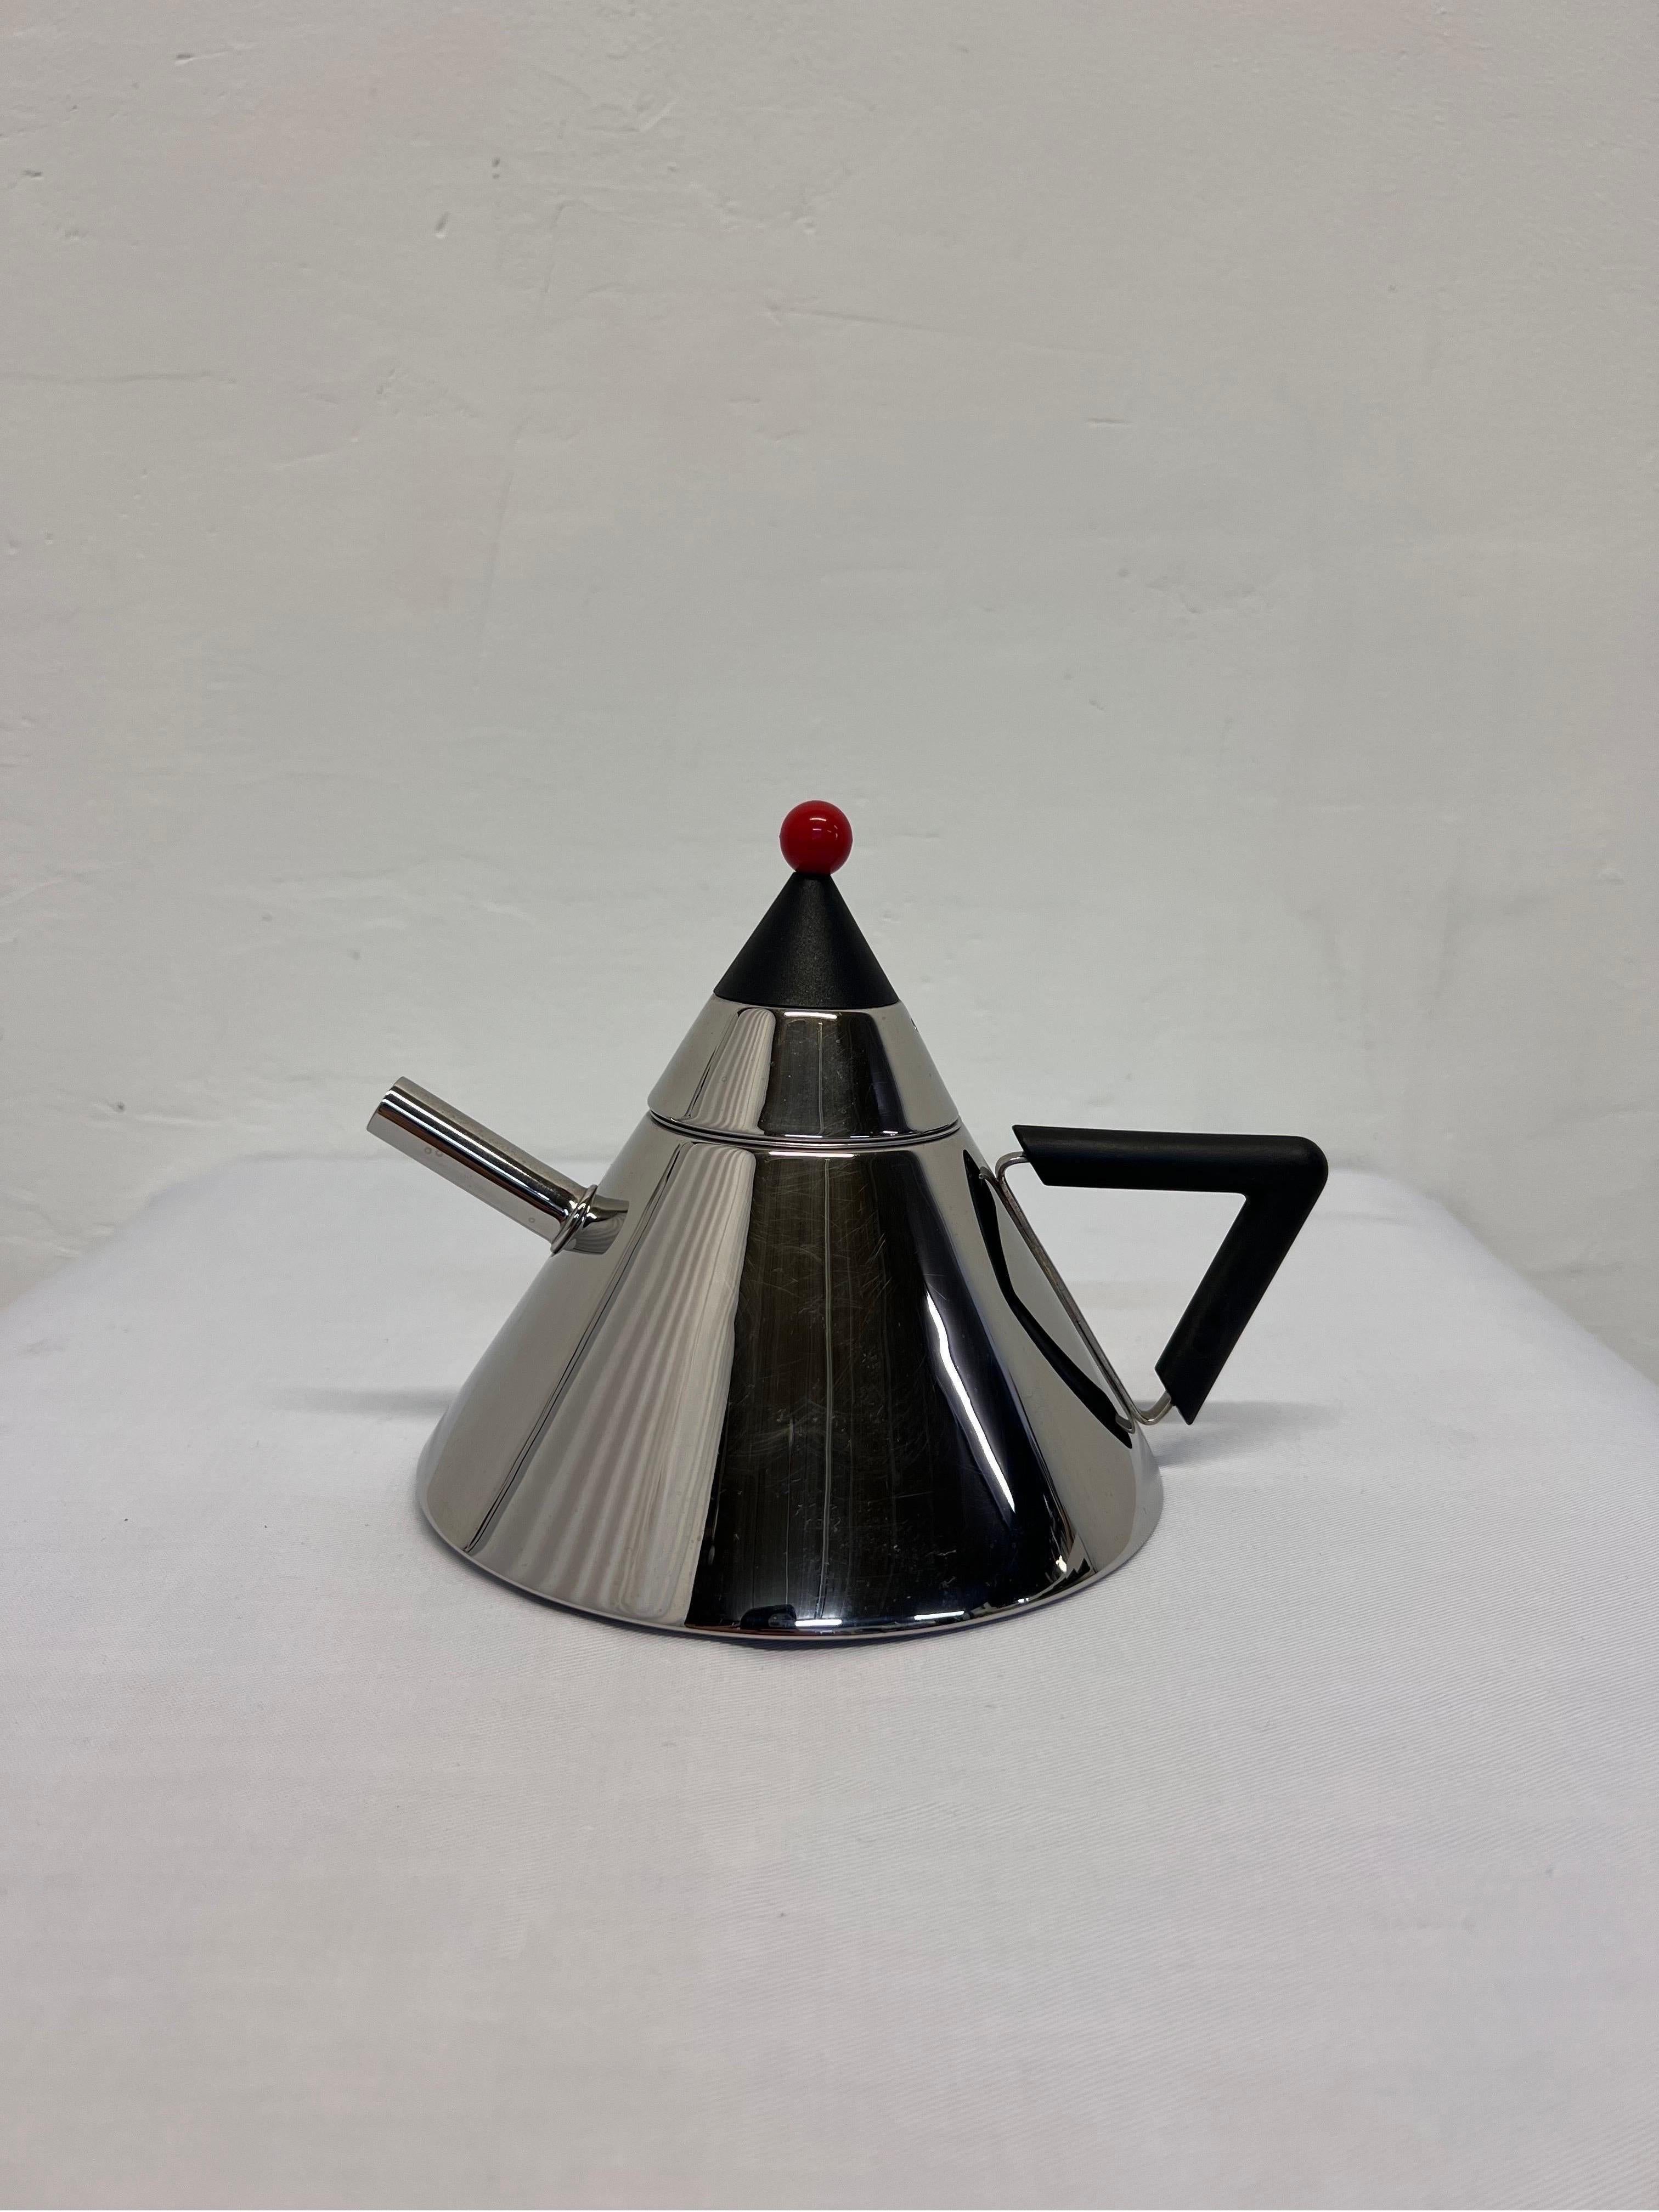 Postmodern stainless steel tea kettle with inner mesh lining by Möller Designs, Japan 1980s.